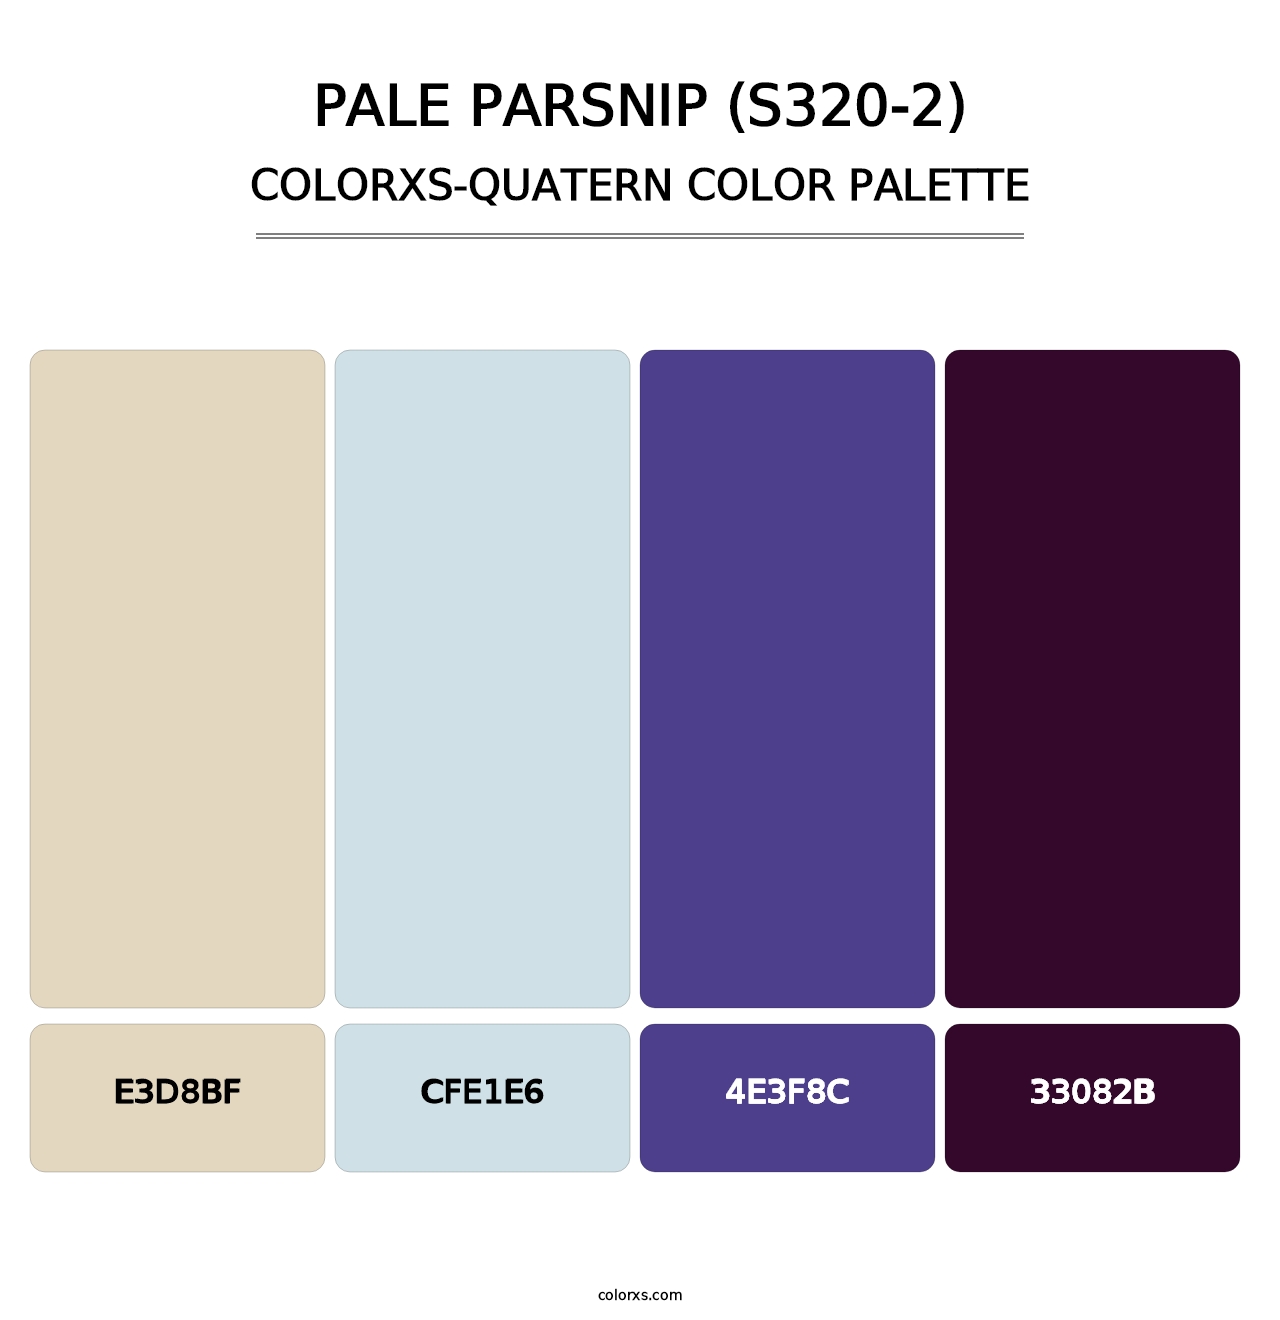 Pale Parsnip (S320-2) - Colorxs Quatern Palette